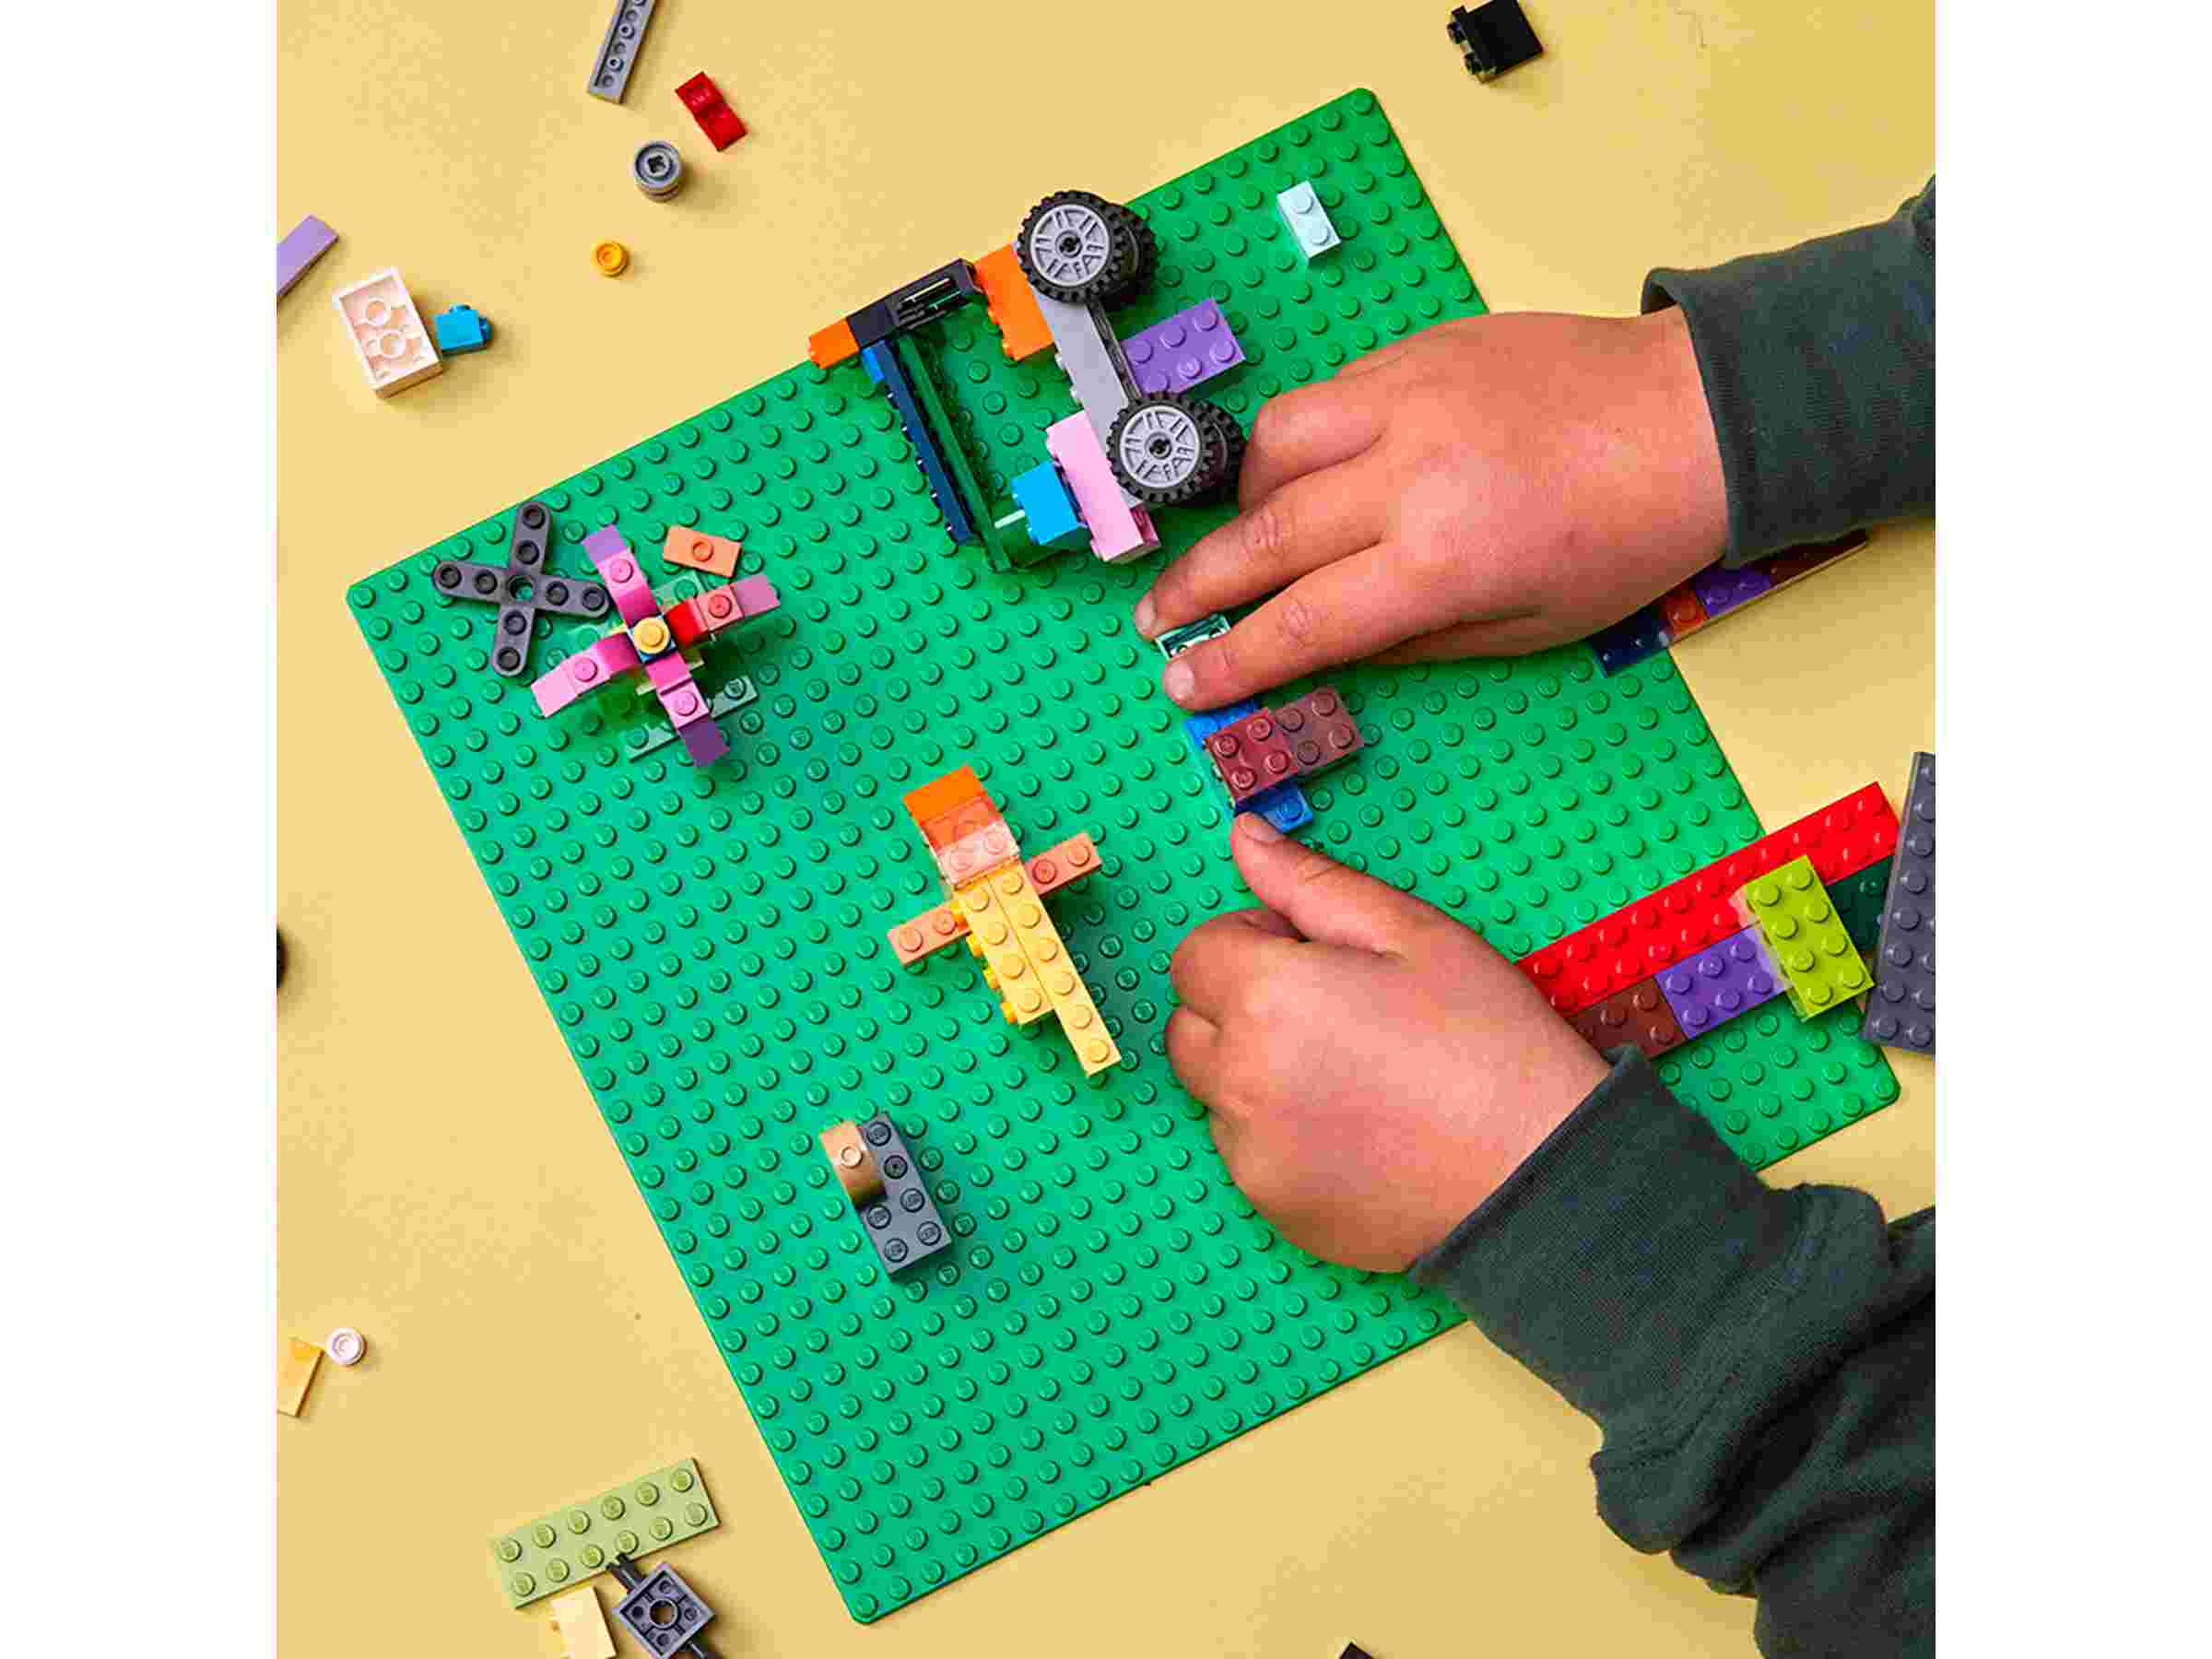 LEGO 11023 Classic Grüne Bauplatte, quadratische Grundplatte mit 32x32 Noppen